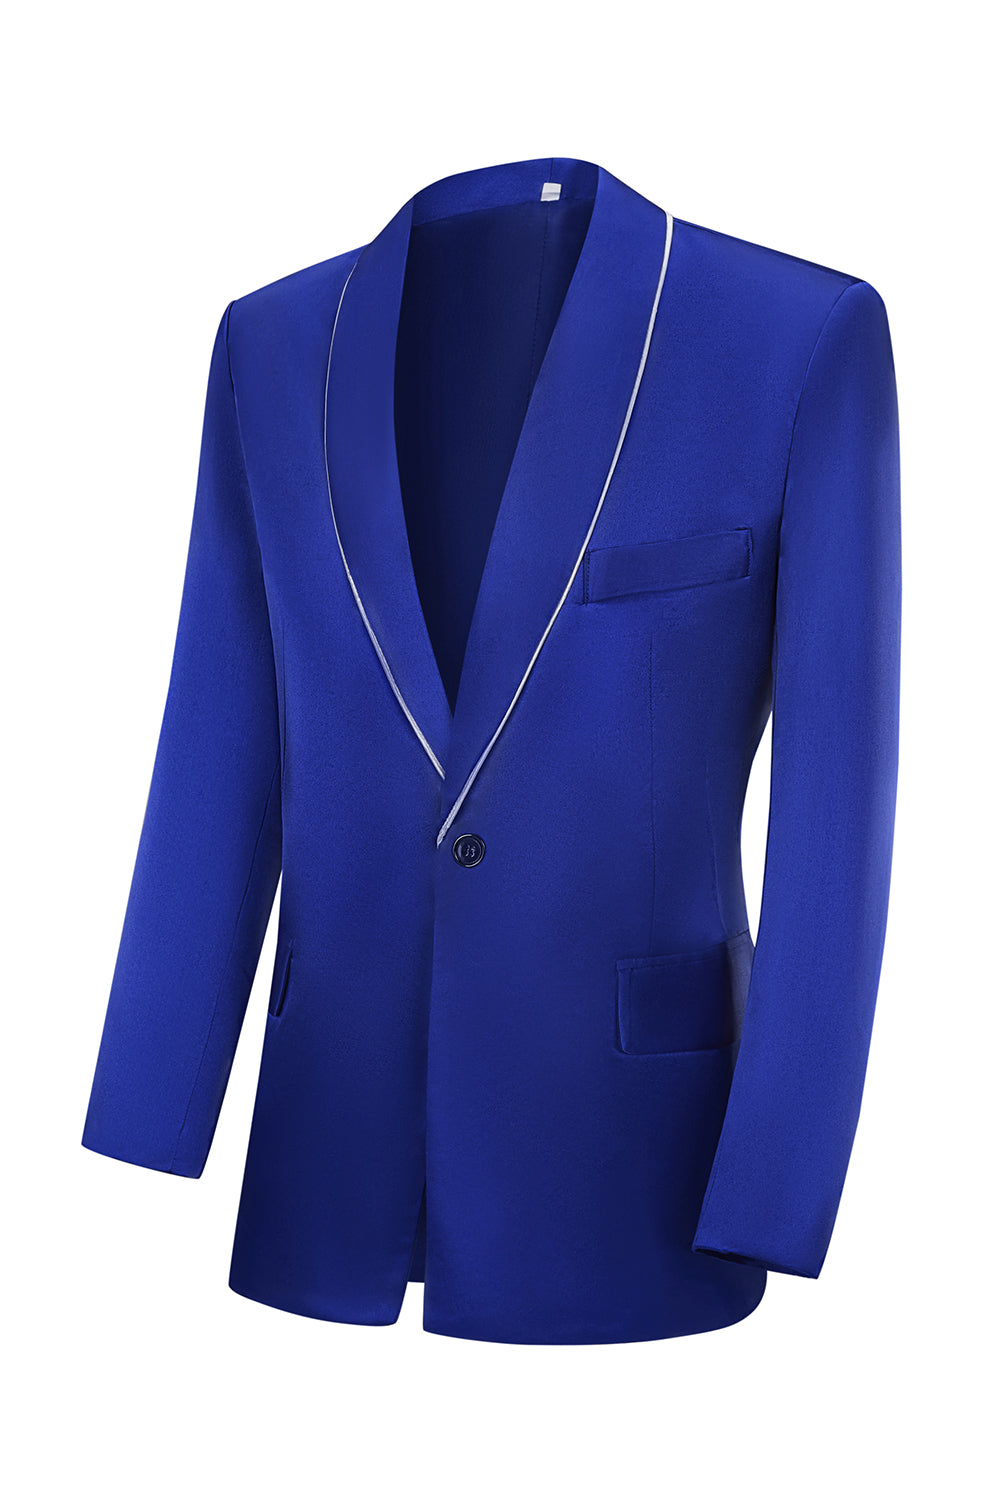 Royal Blue Peak Lapel 3 Piece Men's Formal Suits